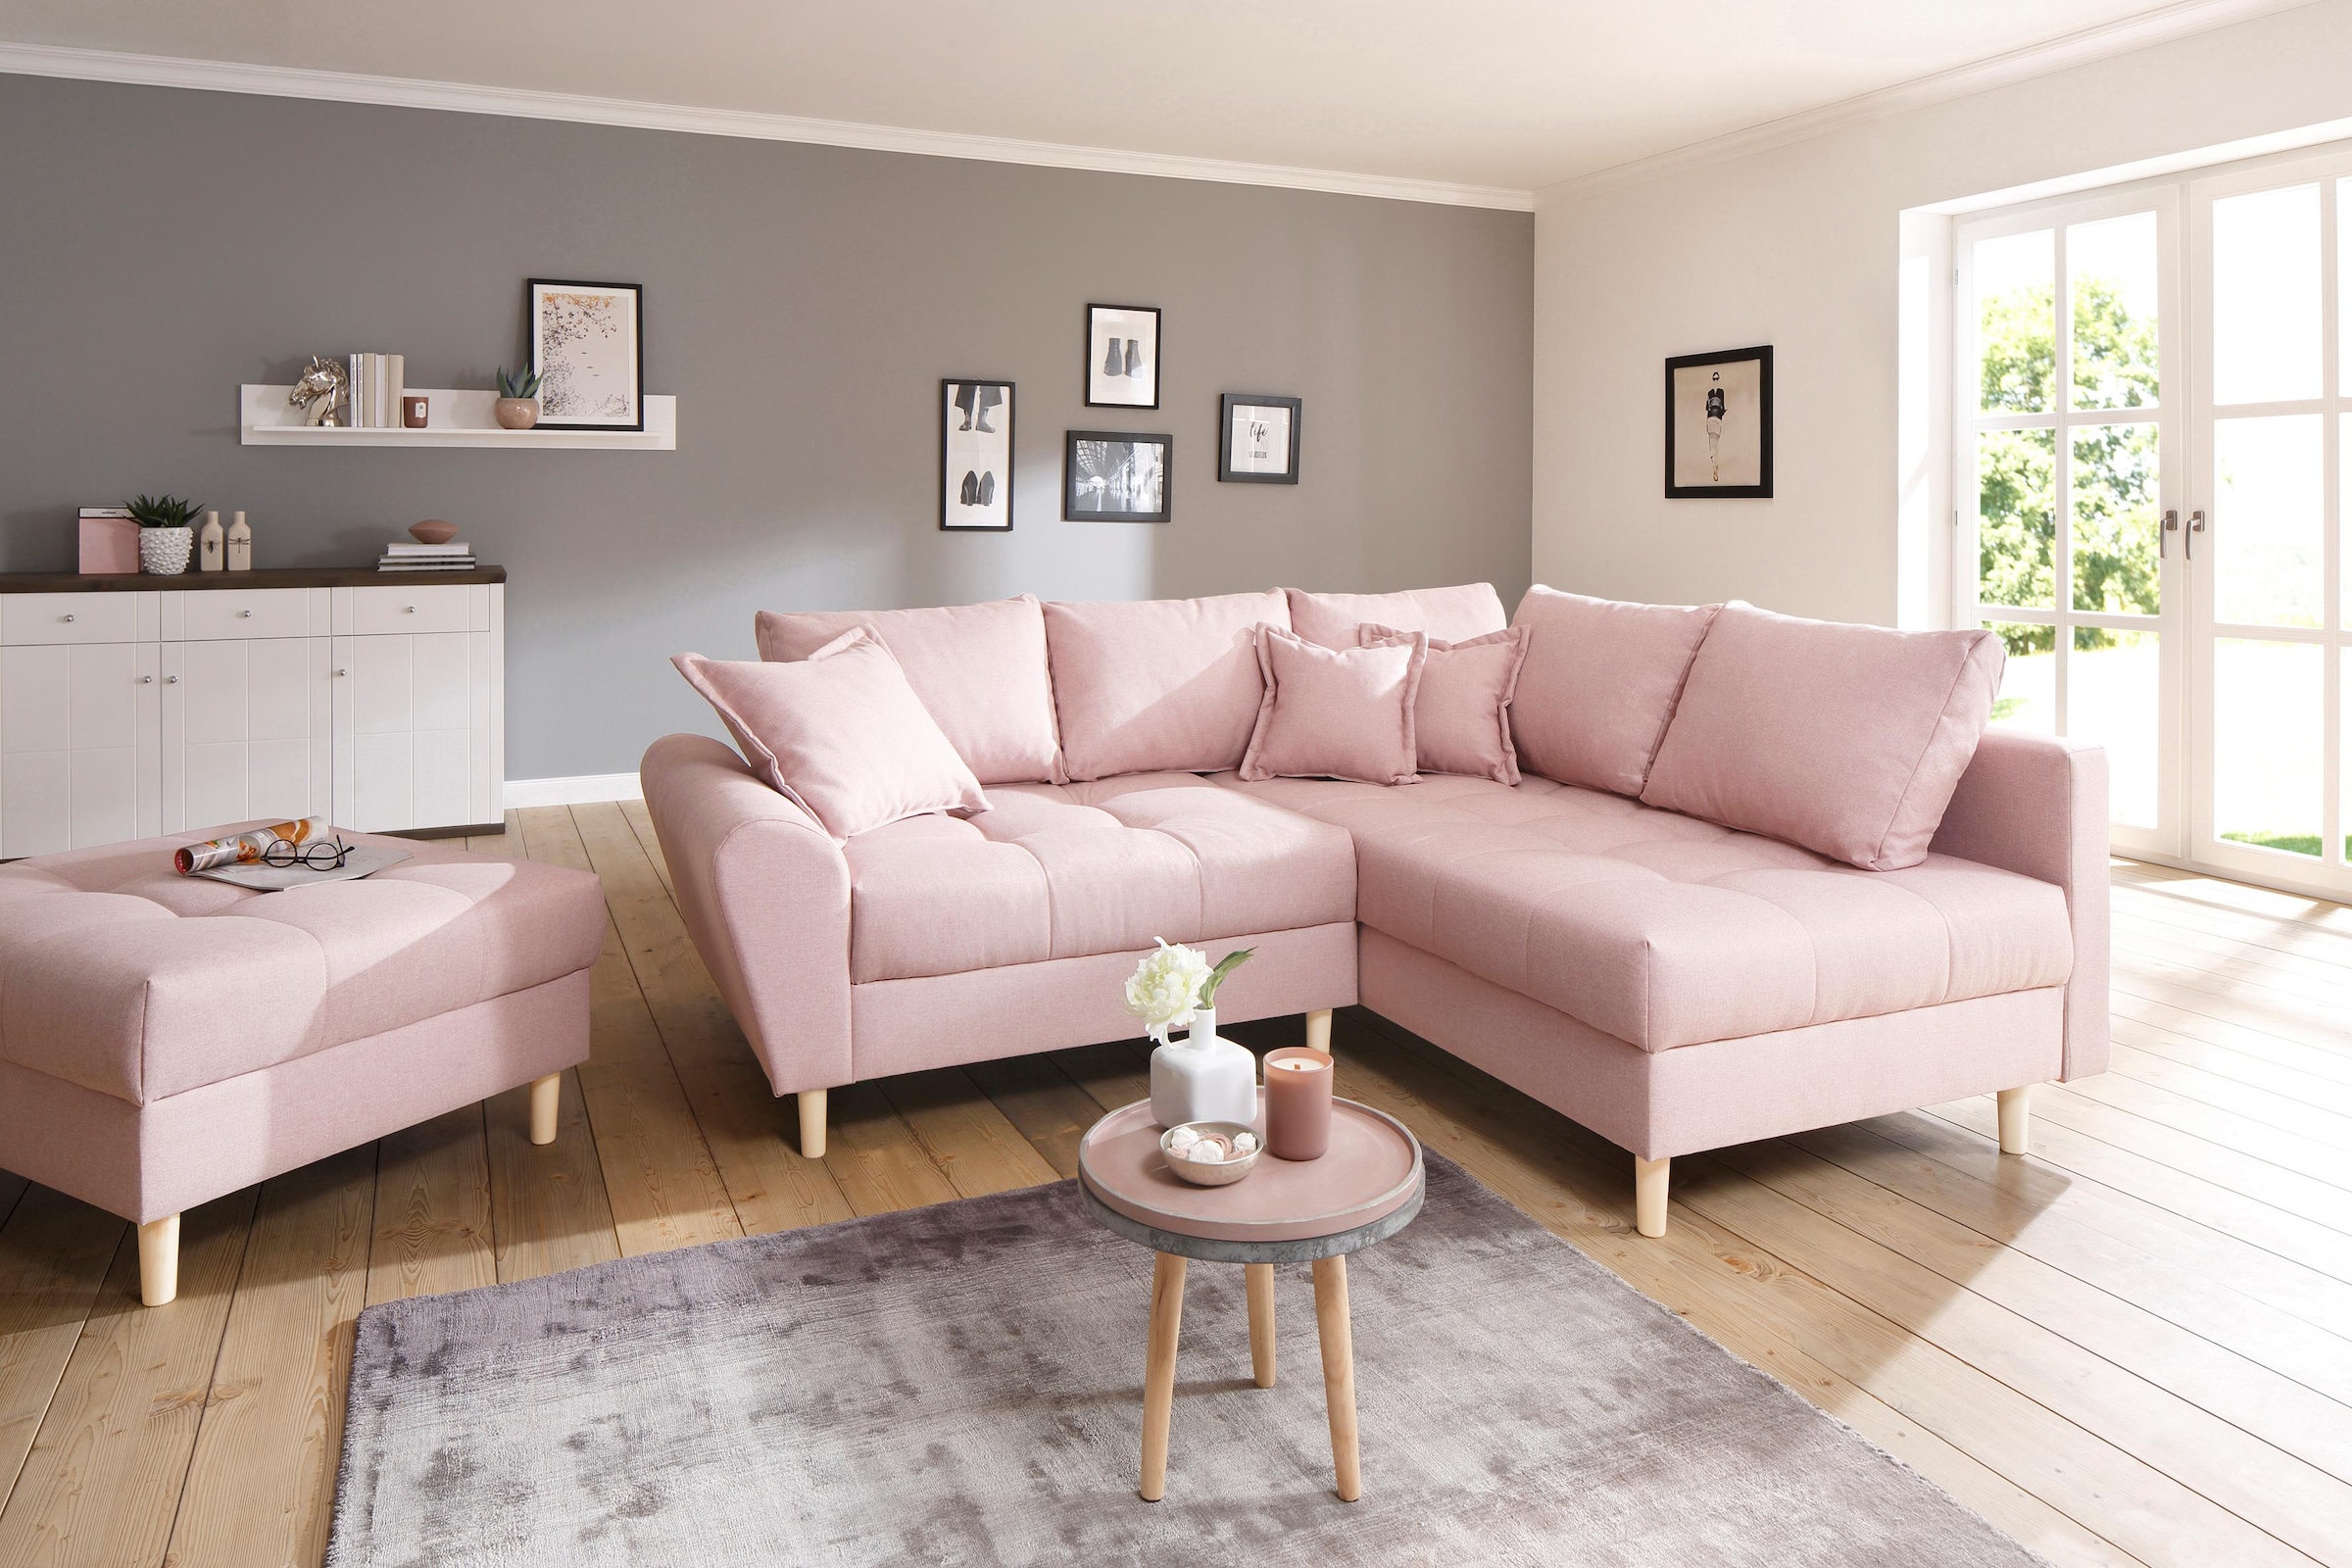 Sofa in Rosa jetzt günstig im Onlineshop bestellen